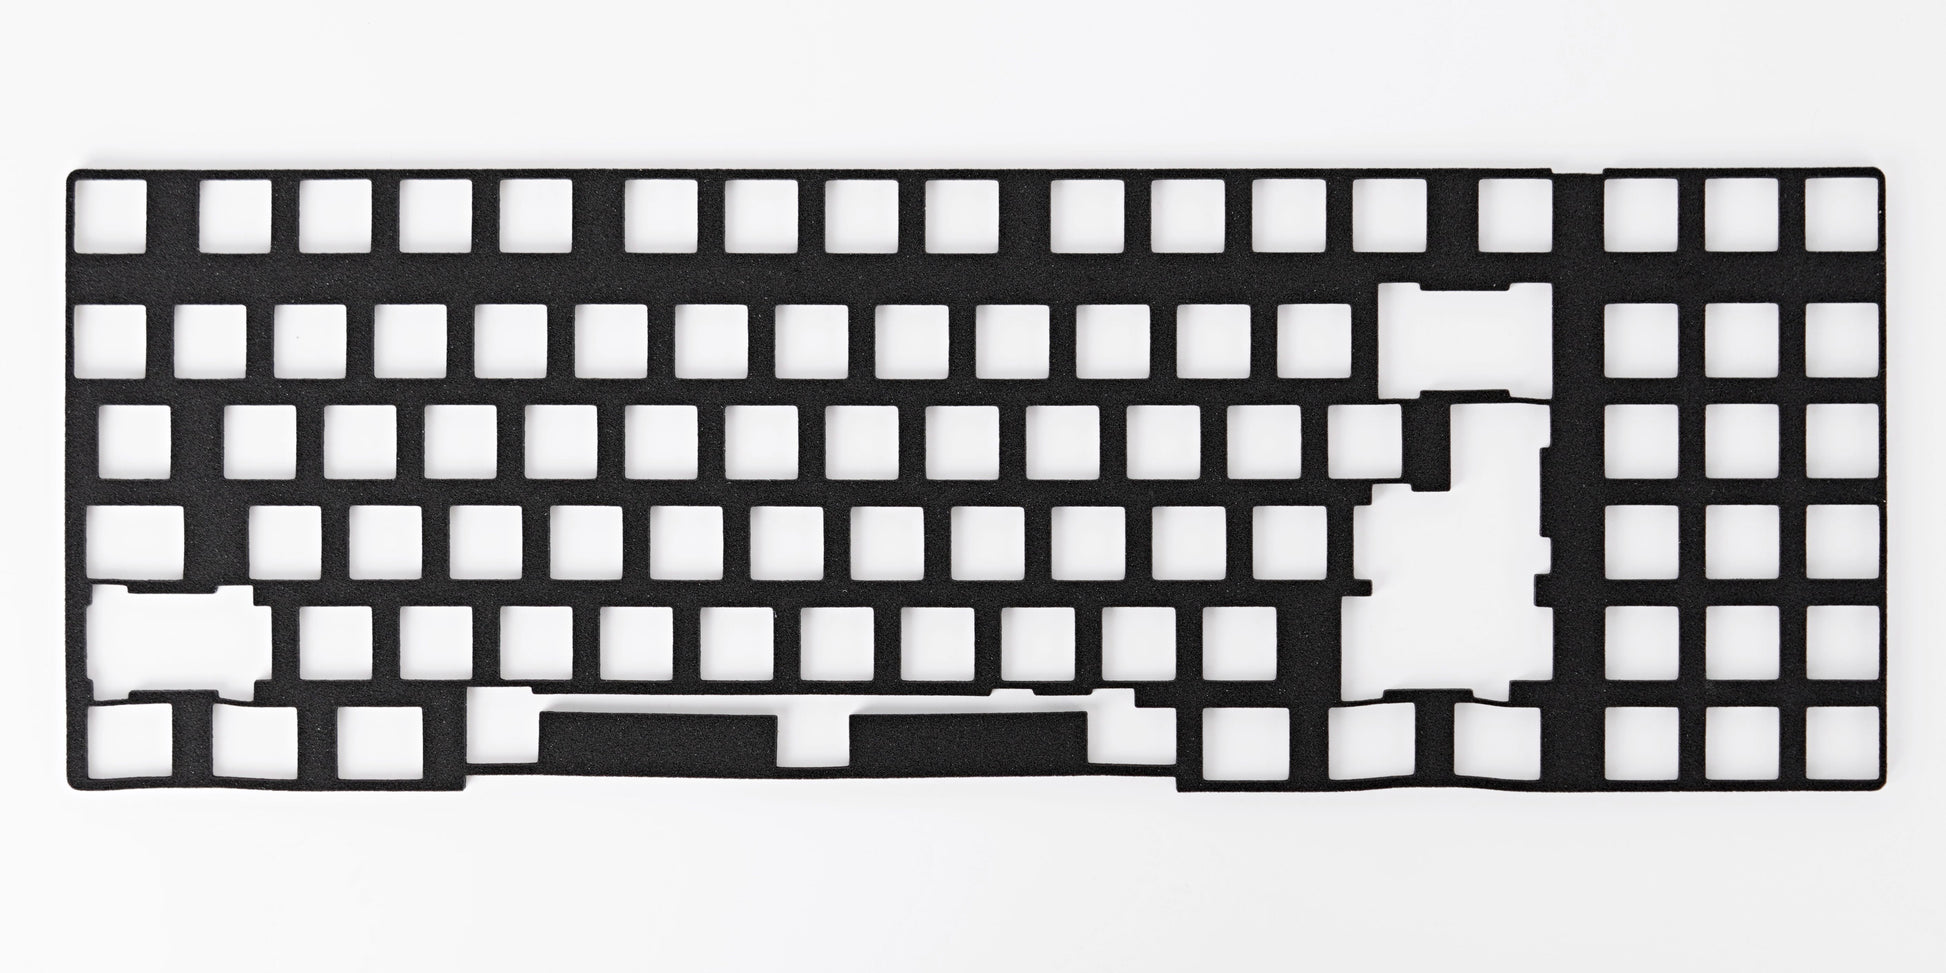 Keyboard Case Foam (Poron)